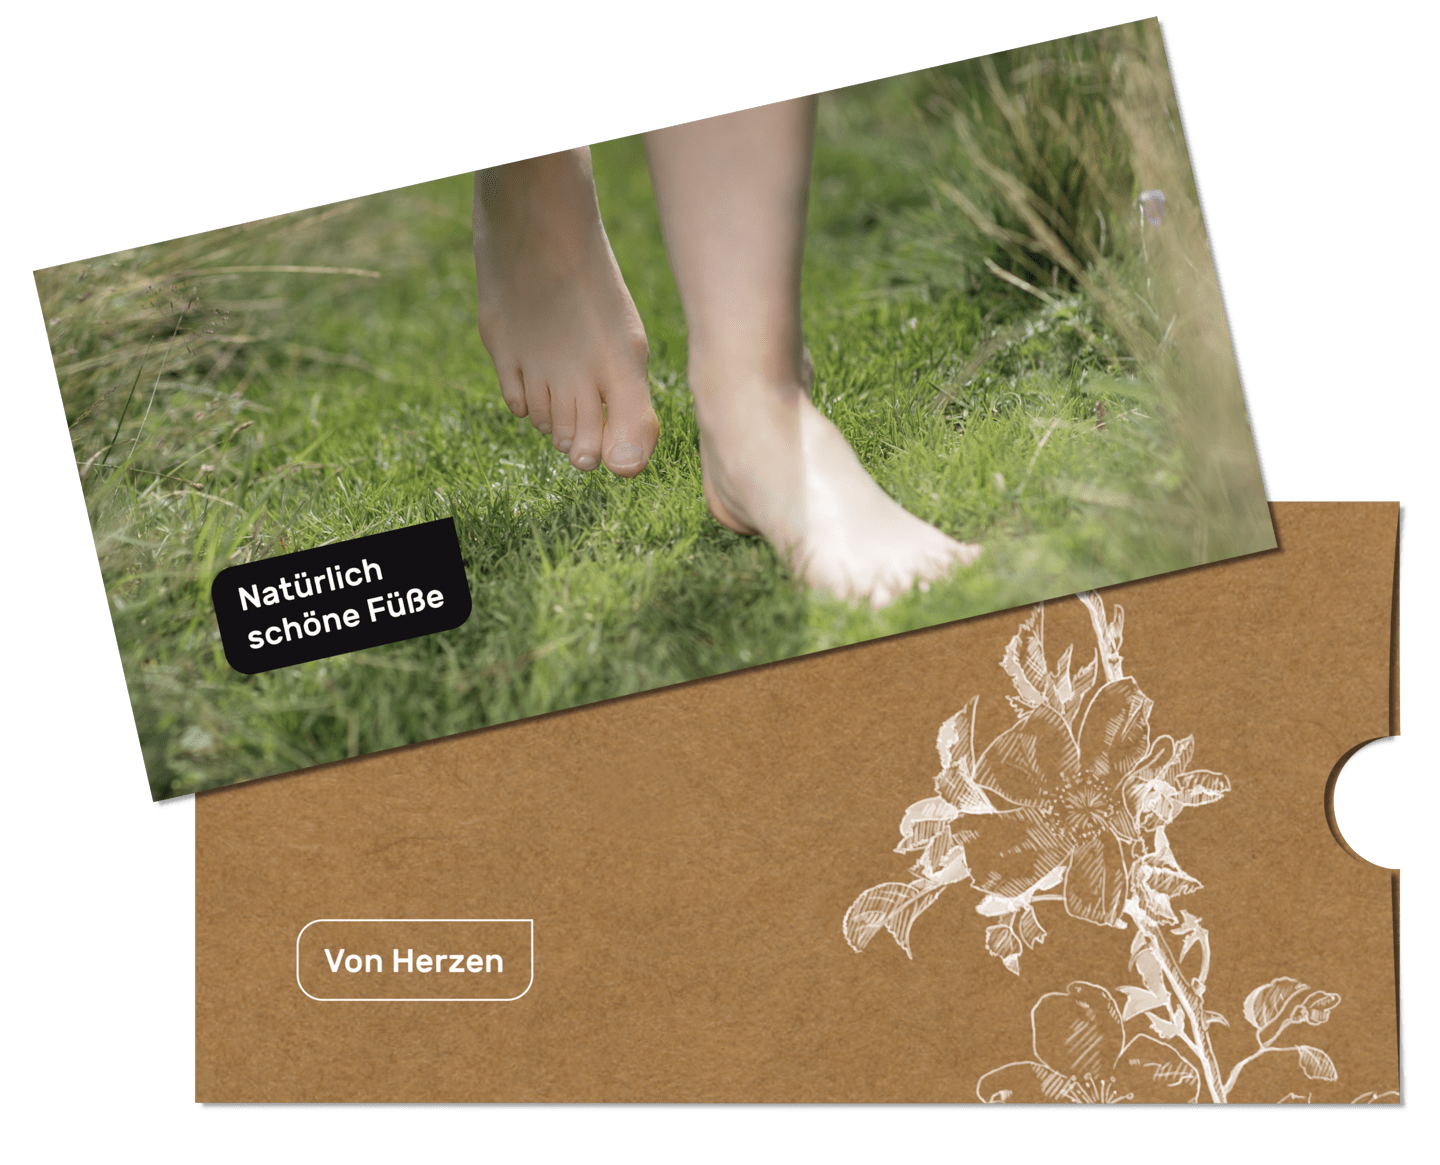 peclavus - Gutscheinkarte inkl. Karten-Schuber, Natürlich schöne Füße, Din Lang, 10,5 x 21 cm, 10 Stück